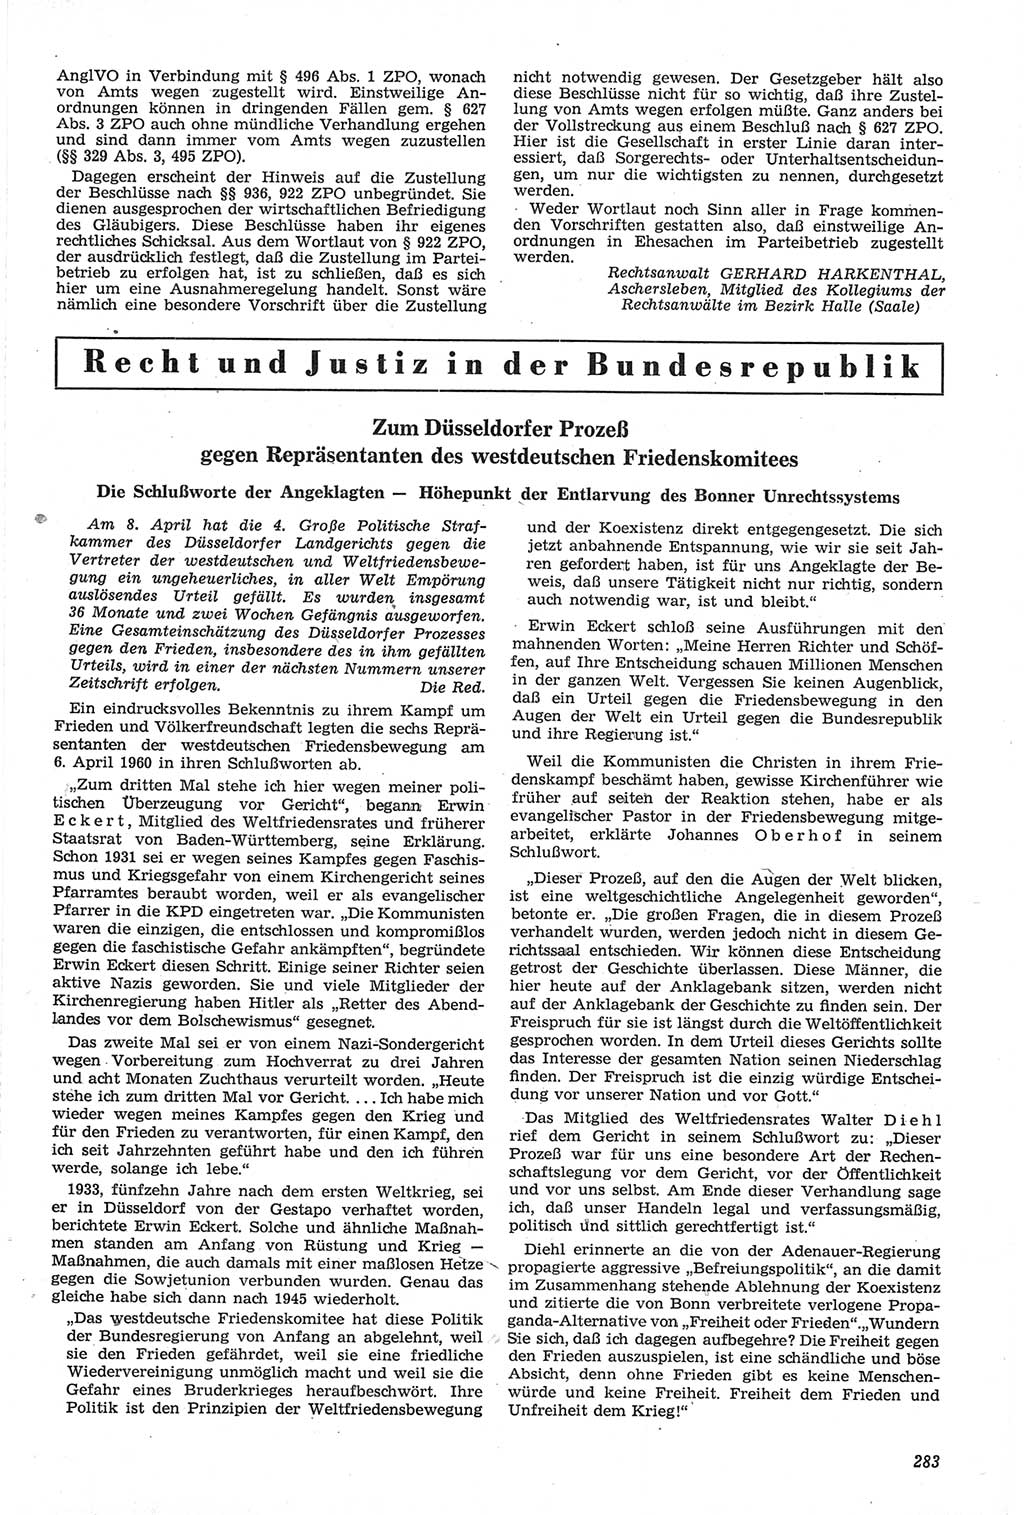 Neue Justiz (NJ), Zeitschrift für Recht und Rechtswissenschaft [Deutsche Demokratische Republik (DDR)], 14. Jahrgang 1960, Seite 283 (NJ DDR 1960, S. 283)